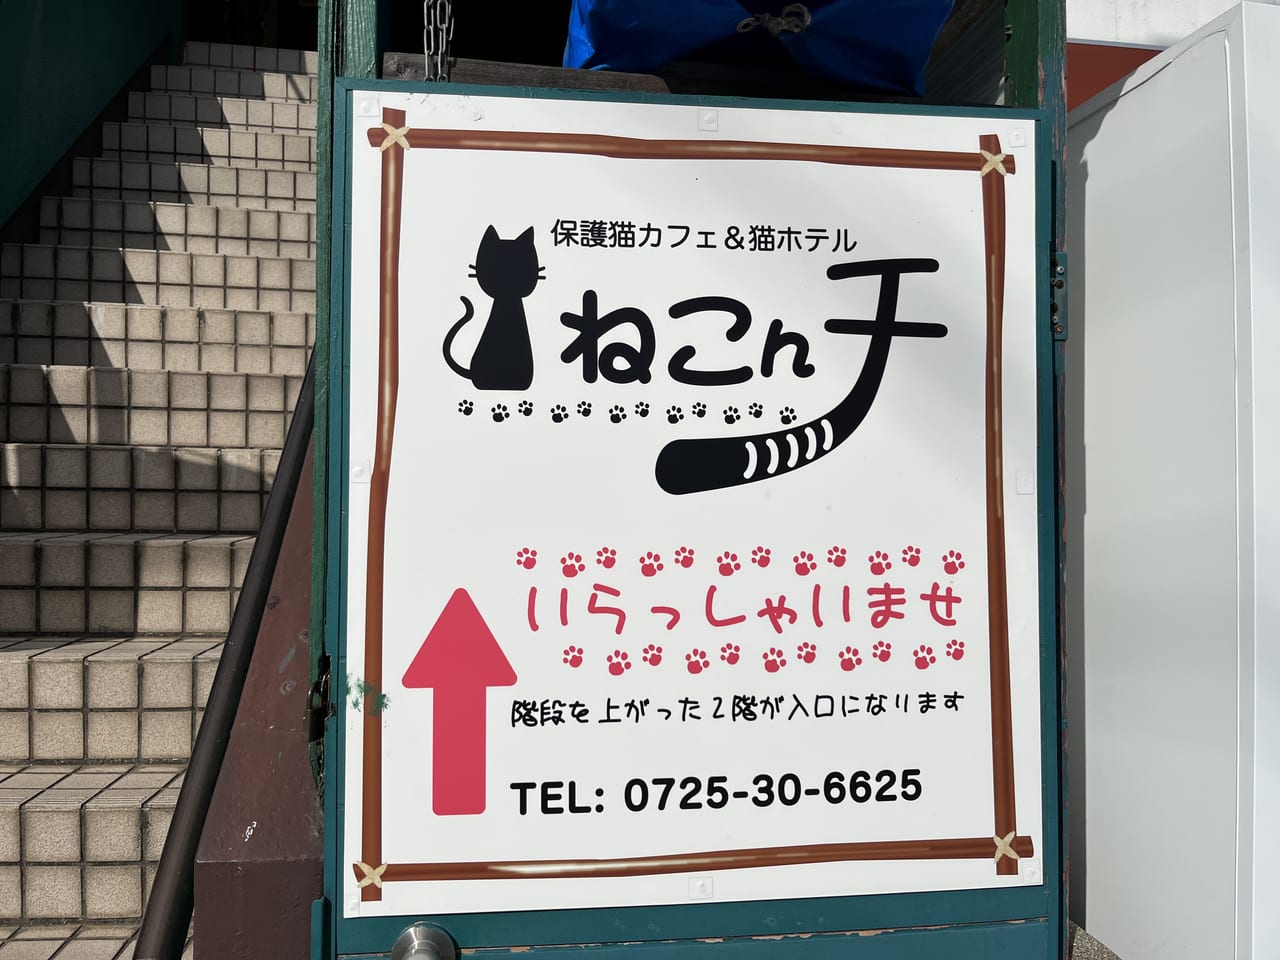 泉大津市 池浦町の 保護猫カフェ 猫ホテル ねこんチ で猫タロット占いが行われます 22年8月5日開催 号外net 泉大津 高石 忠岡